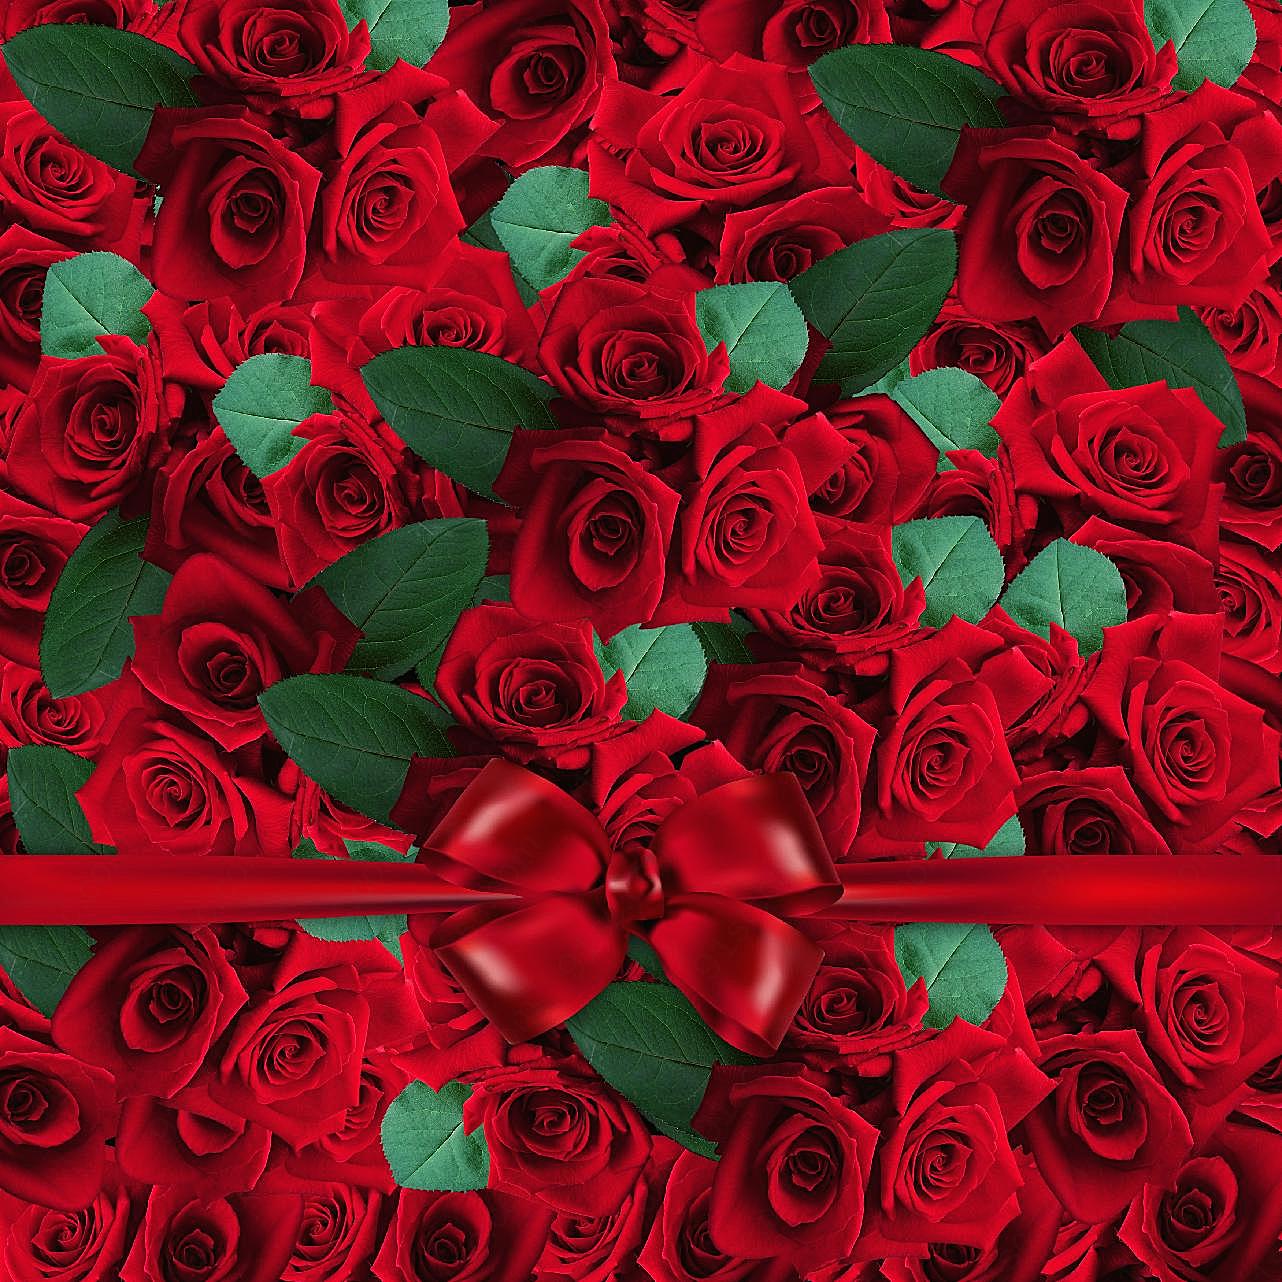 浪漫红玫瑰背景图片摄影高清